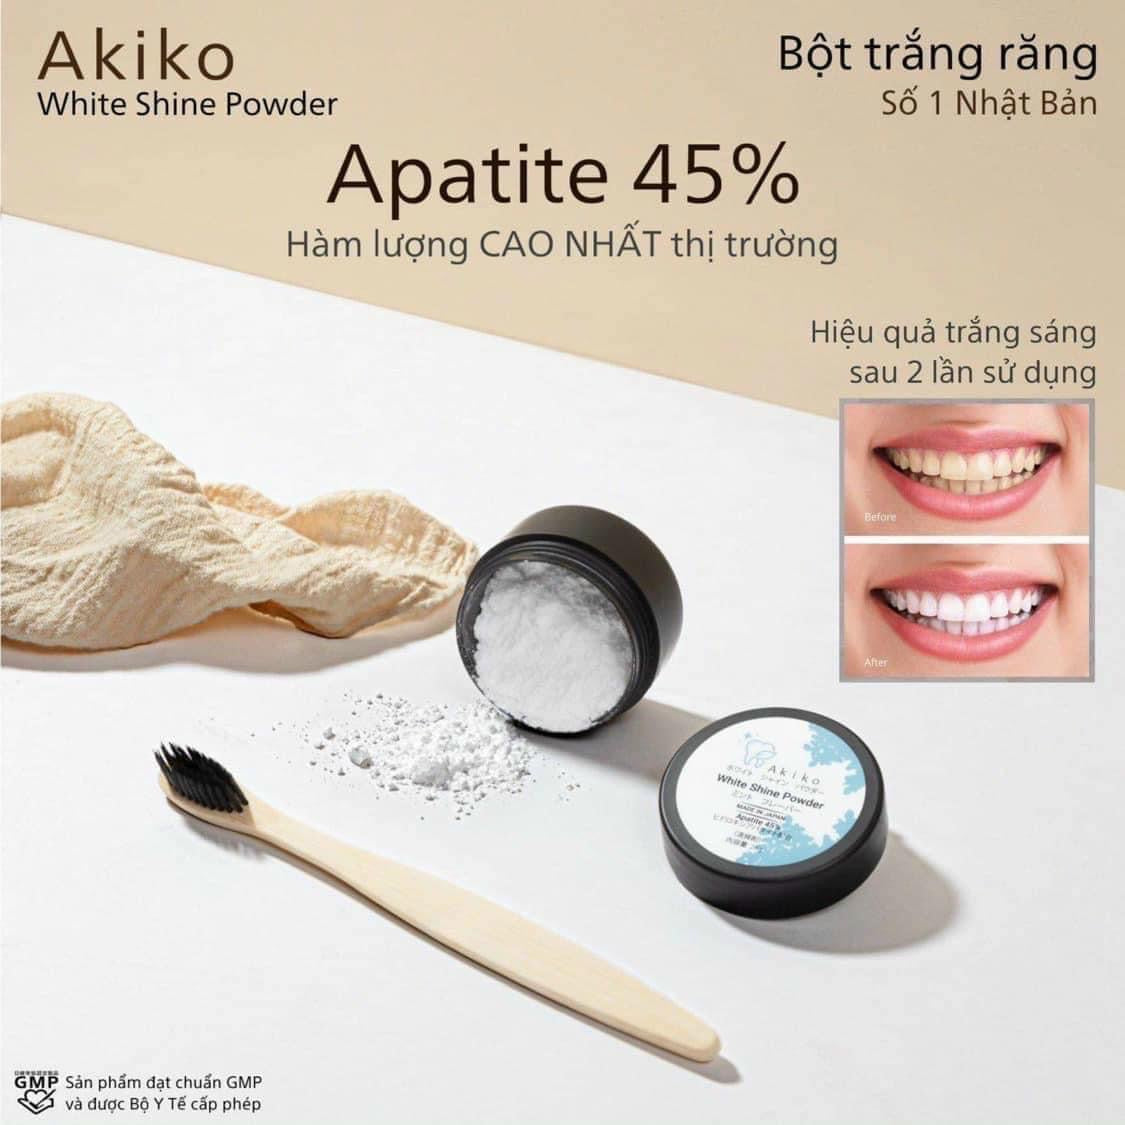 Bot trang răng Akiko japan